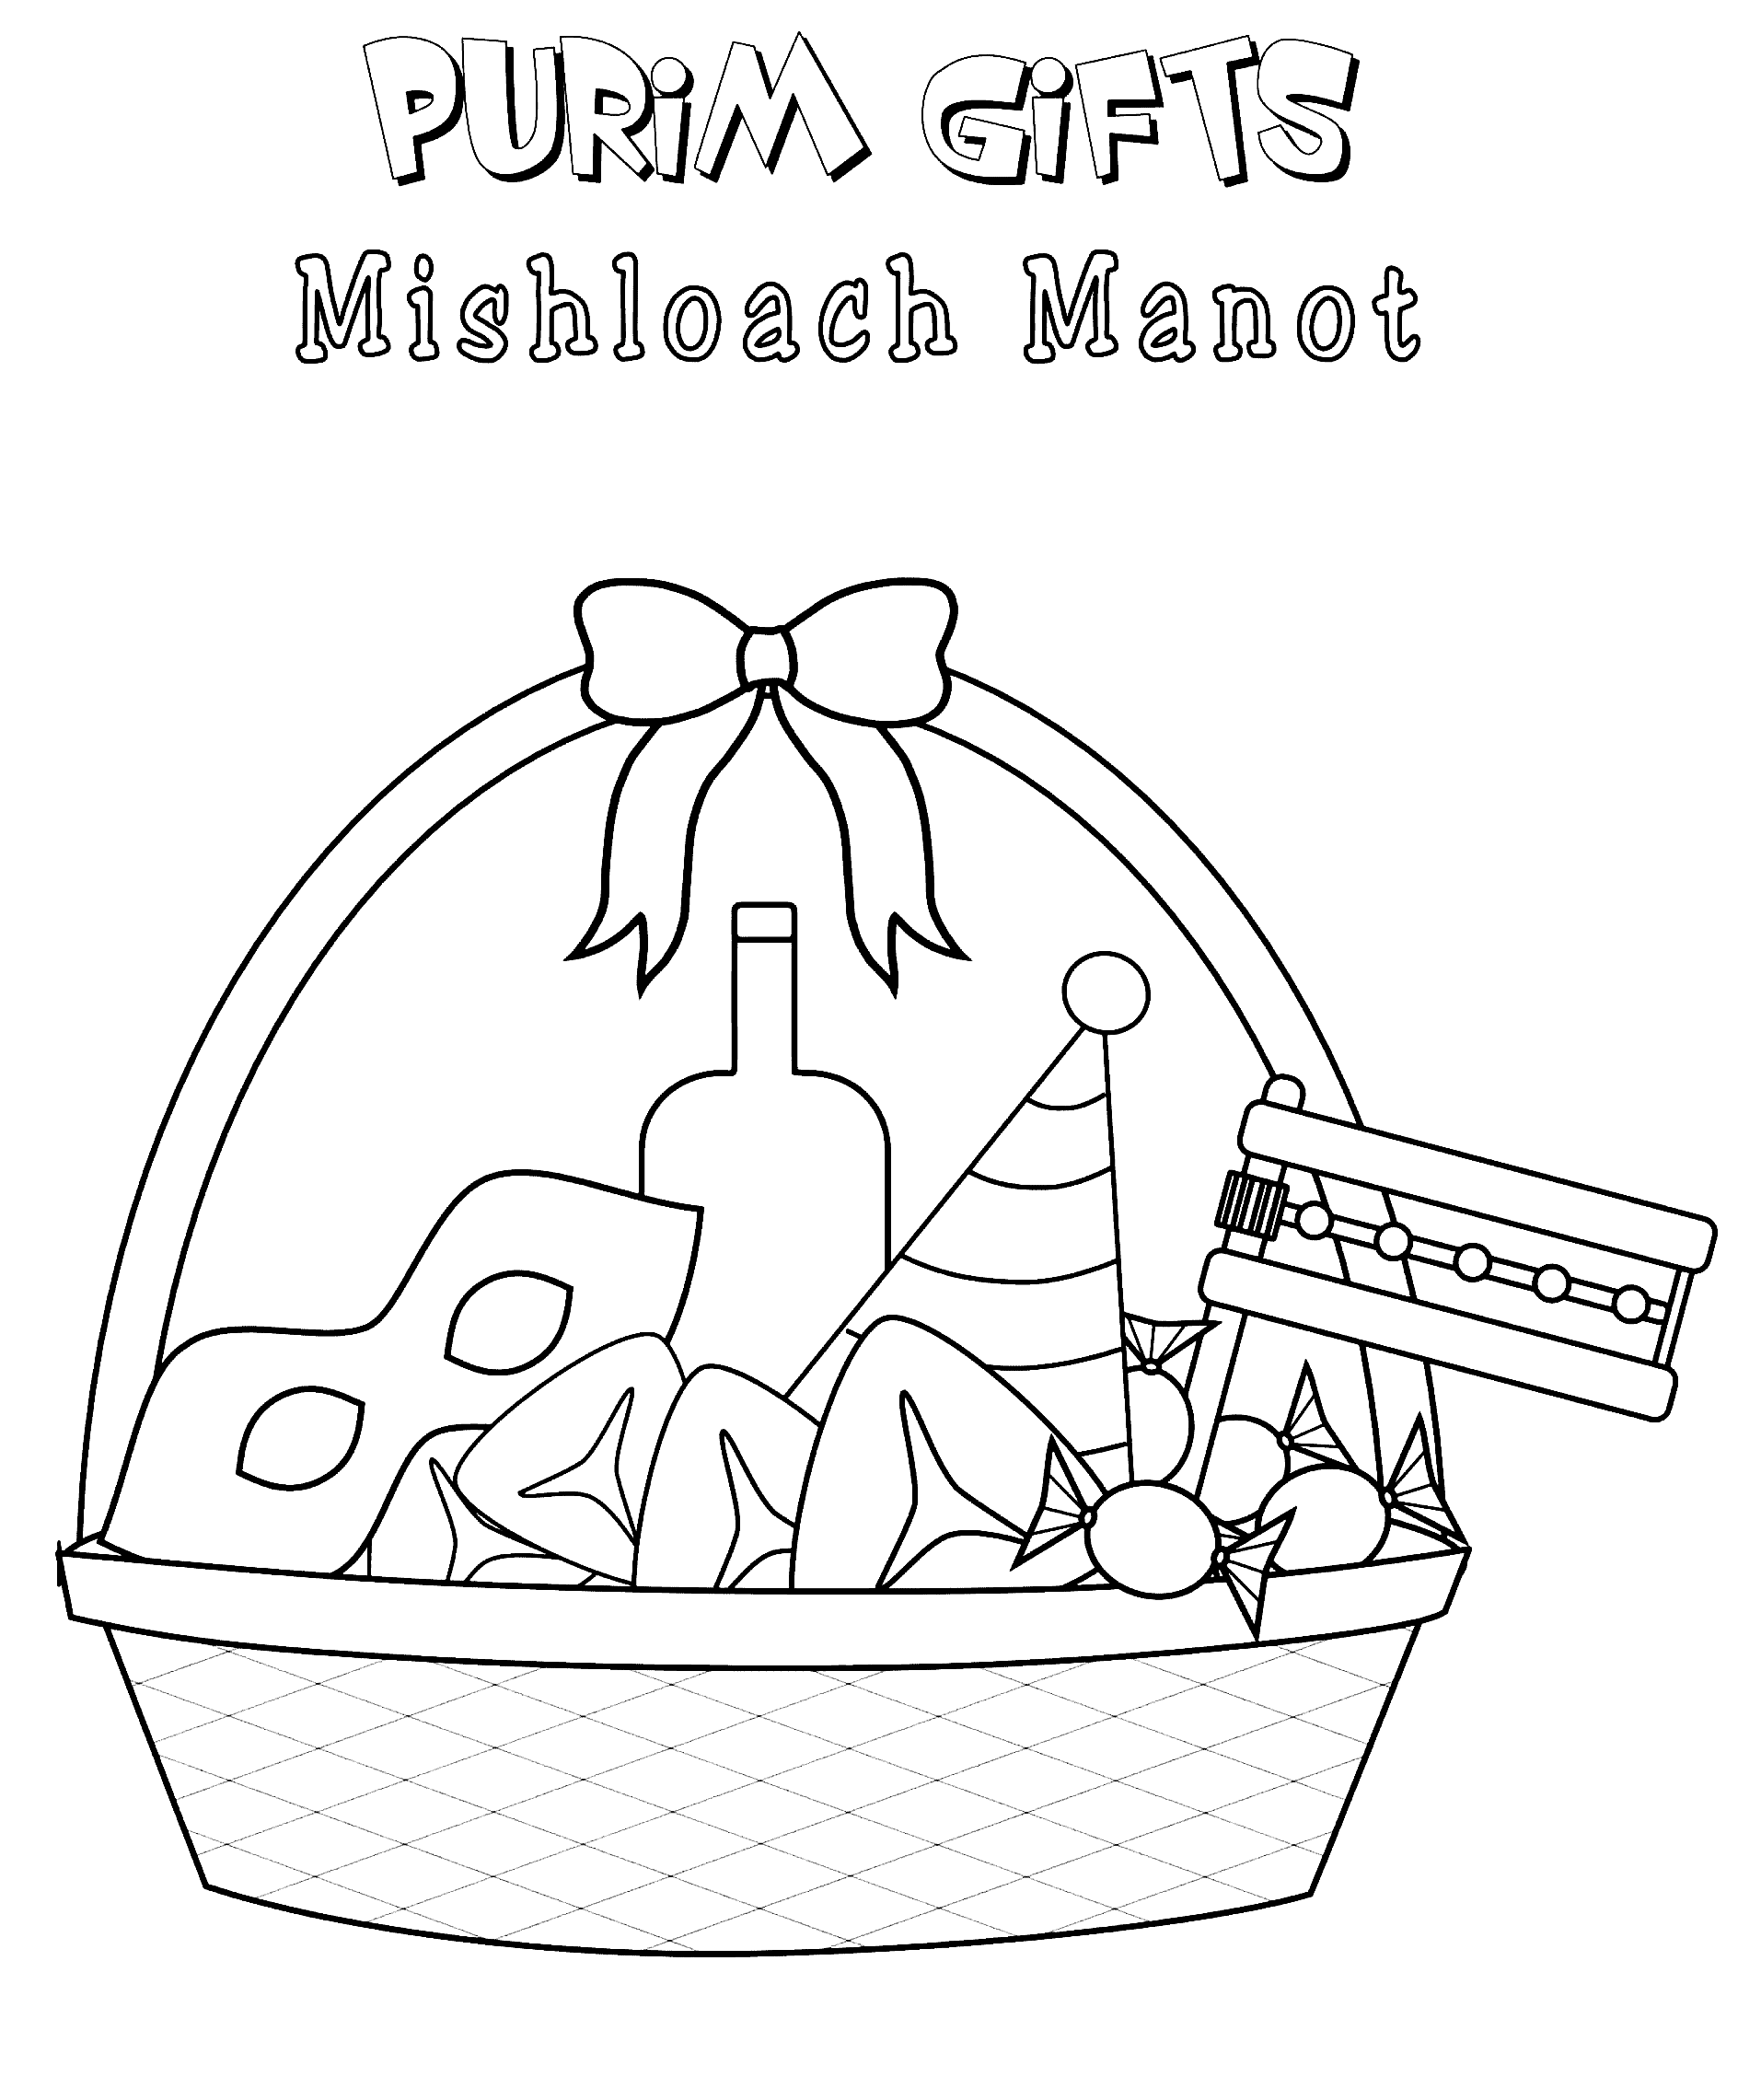 Regali Purim Pagina da colorare di Mishloach Manot